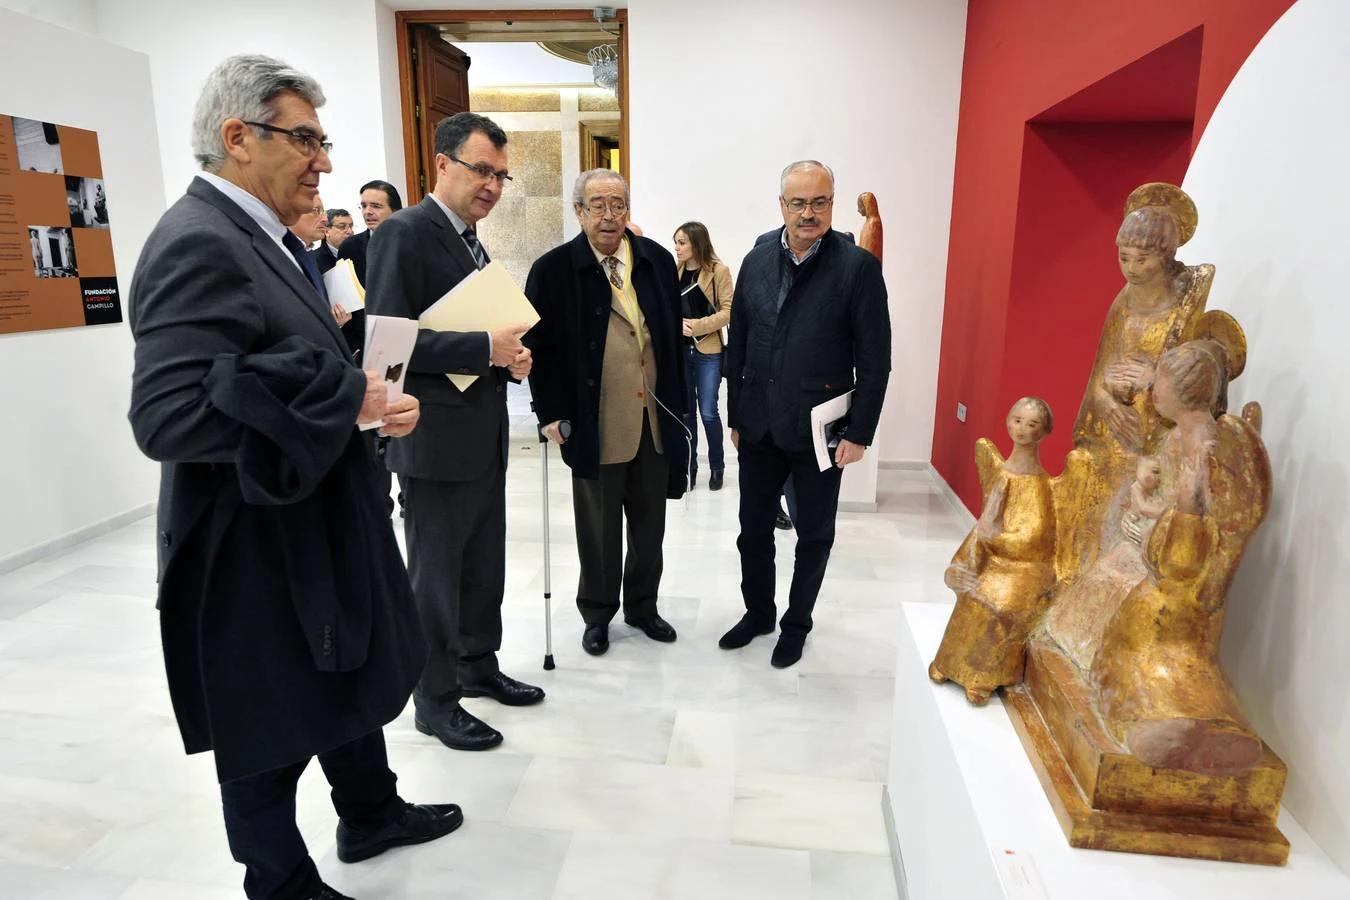 El Ayuntamiento de Murcia expone 20 obras del escultor, de ellas cinco desconocidas en Murcia, y otras 32 de creadores de las escuelas de Madrid y París